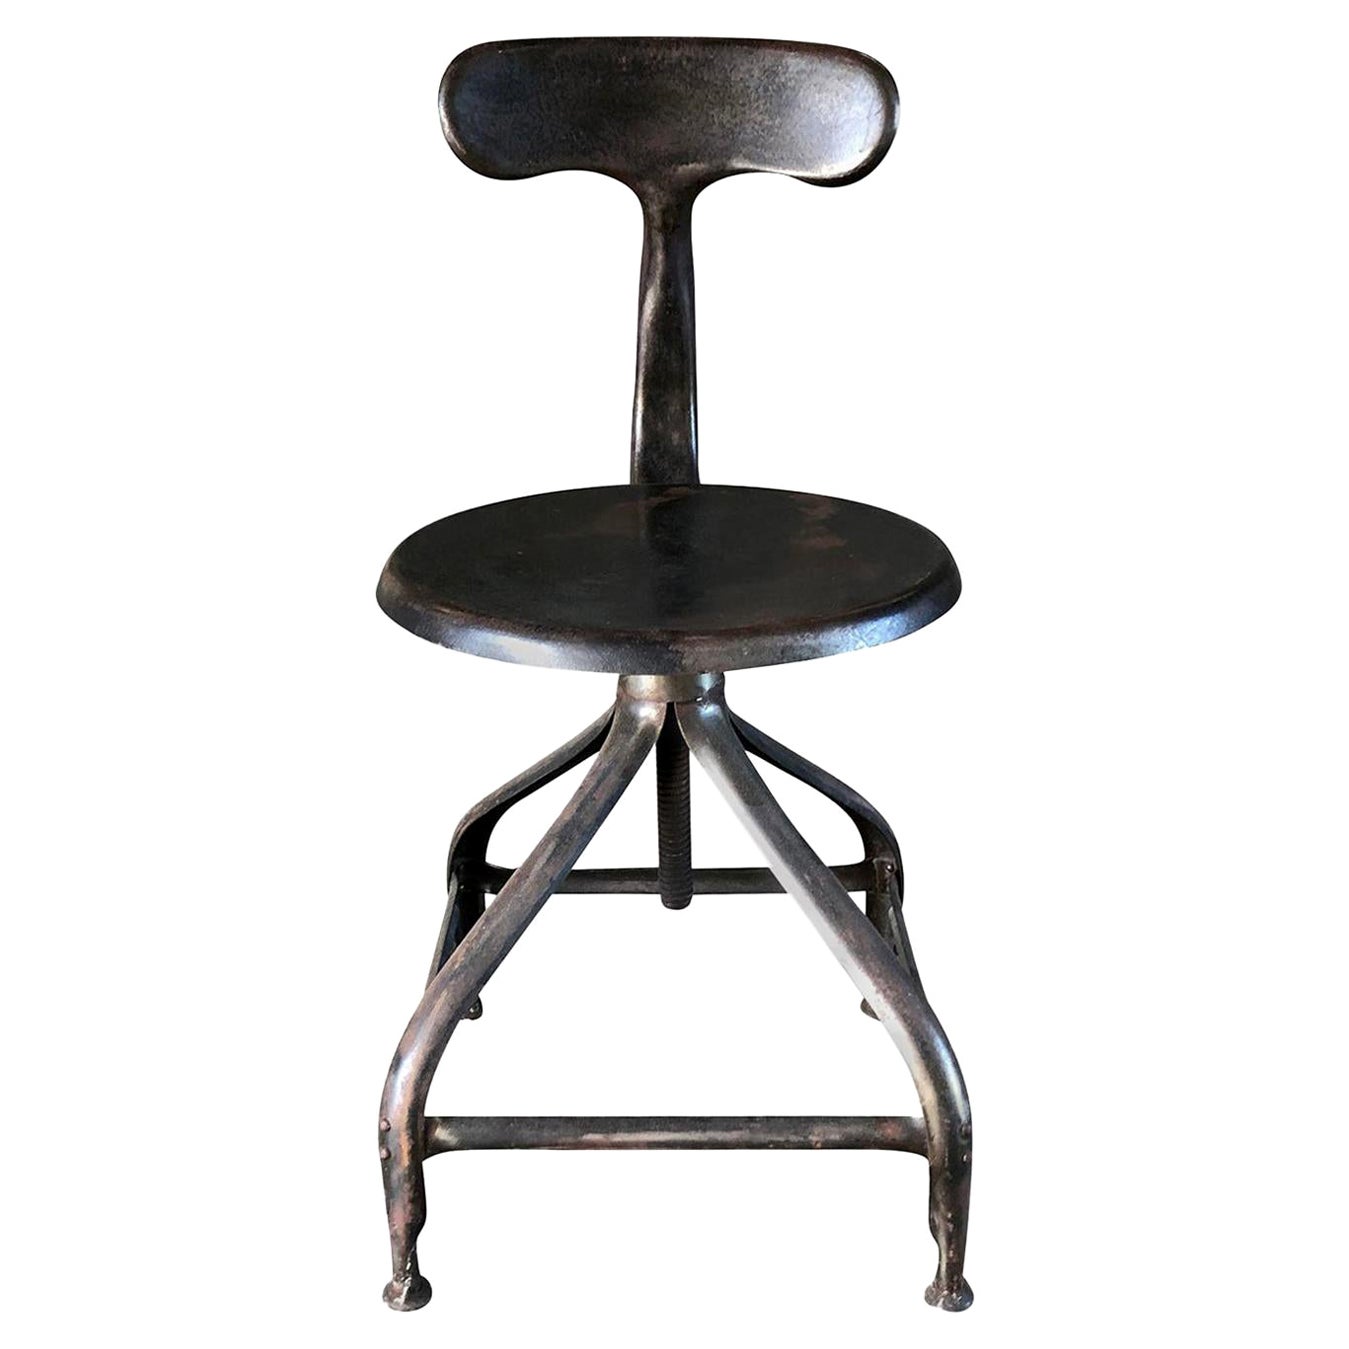 Chaise d'Atelier Nicolle du XXe siècle, chaise d'atelier de Paul-Henry Nicolle